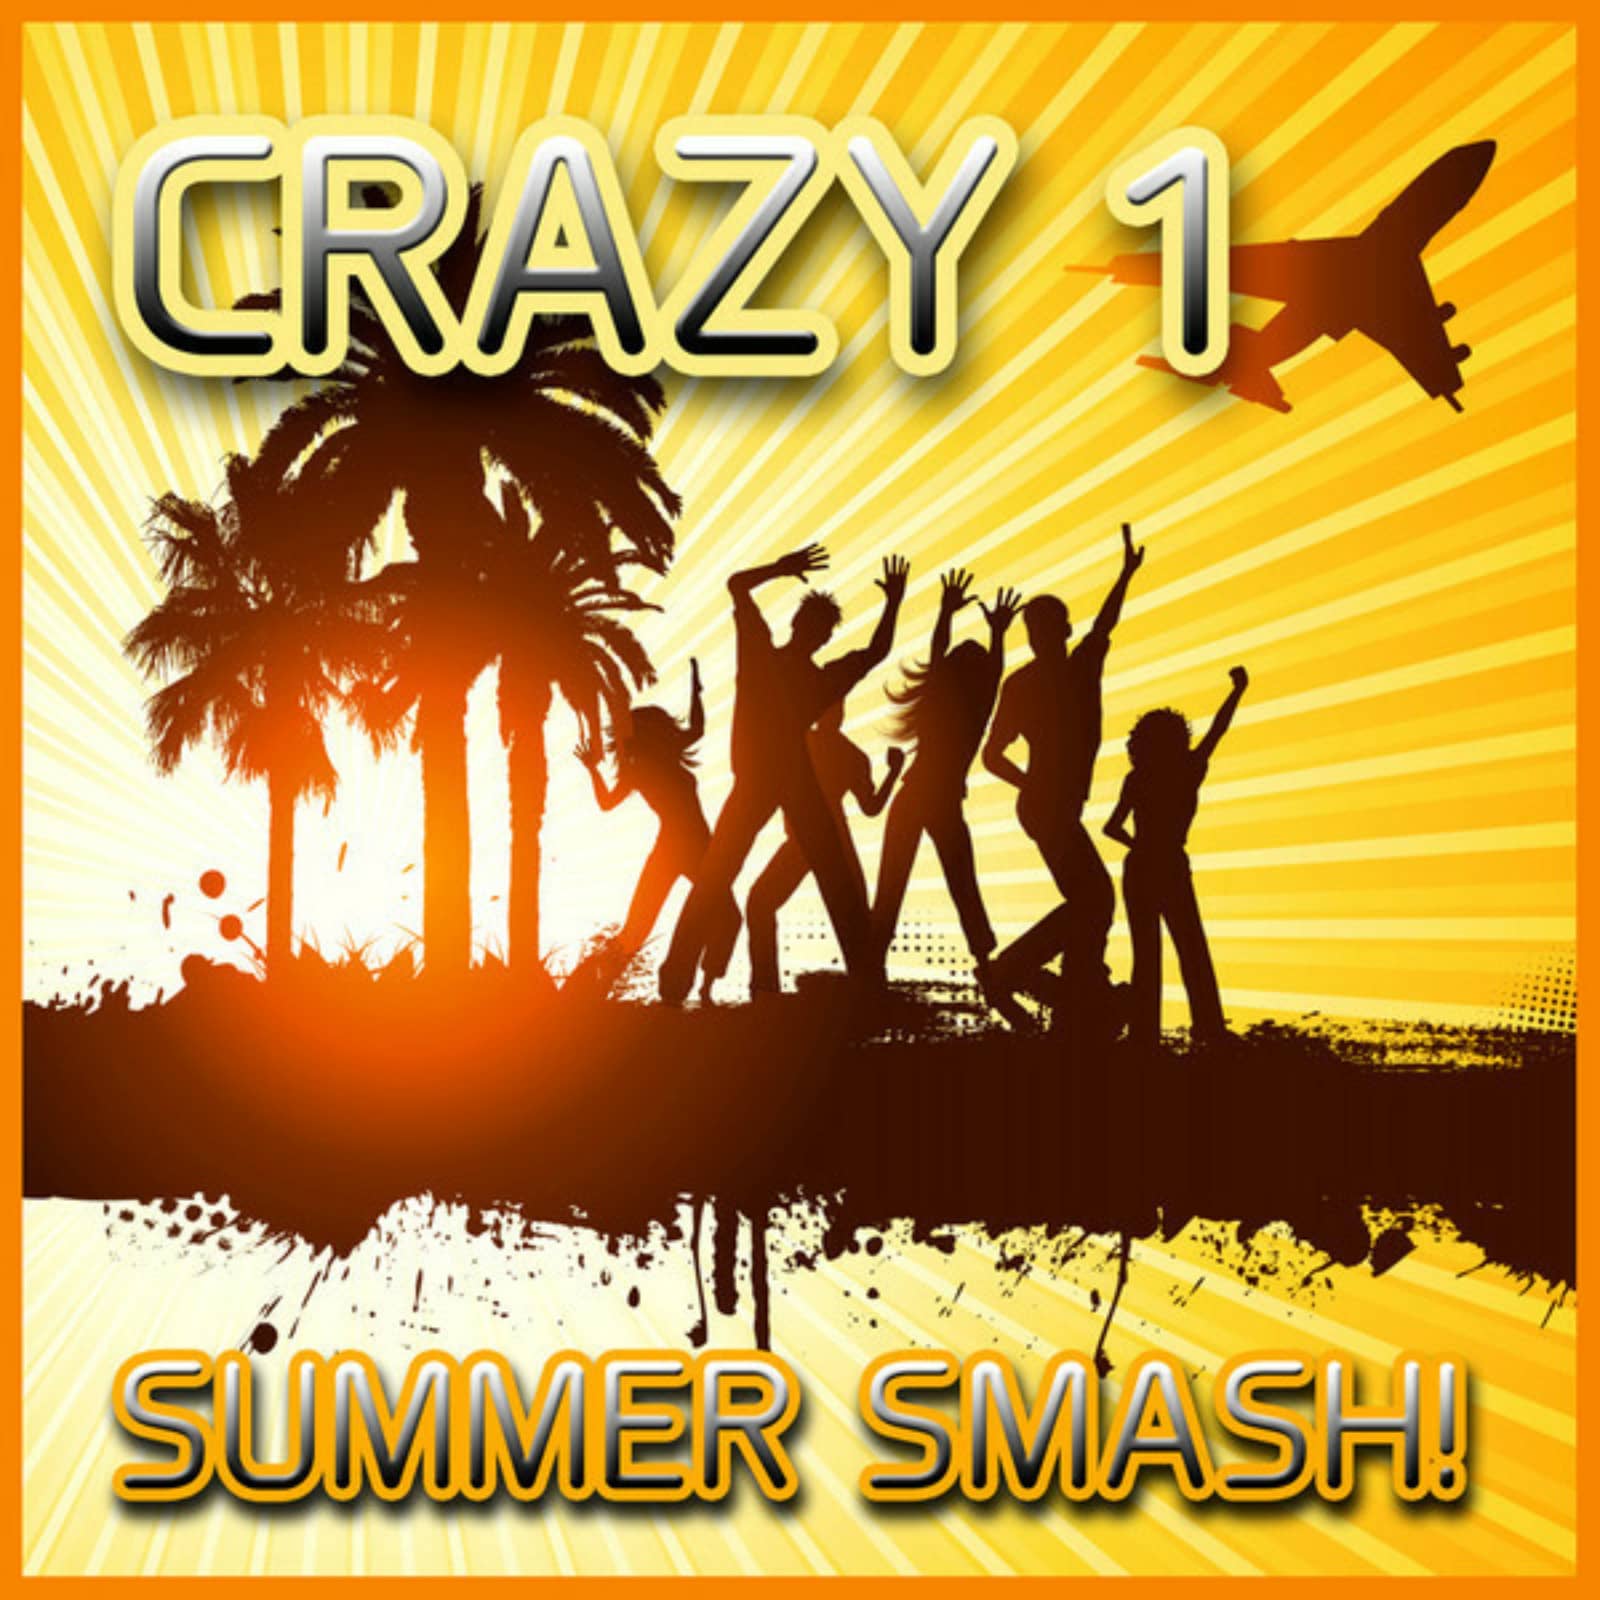 Summer Smash Hits 91. Summer Smash Hits 1998. Crazy Summer Dance текст. Crazy summer dance